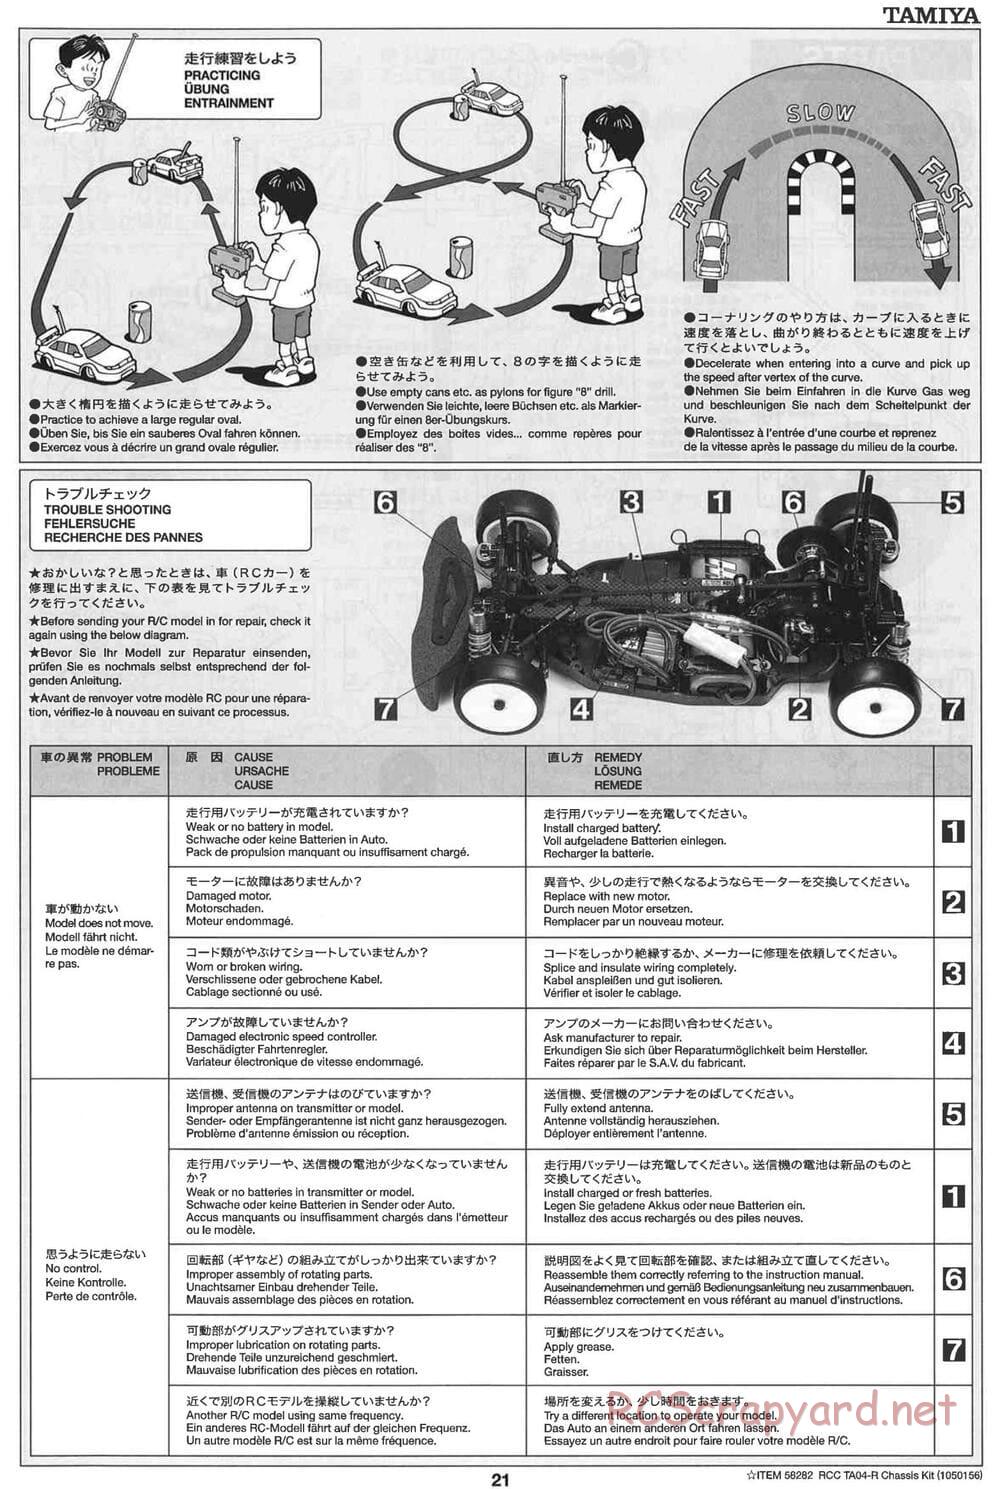 Tamiya - TA-04R Chassis - Manual - Page 21